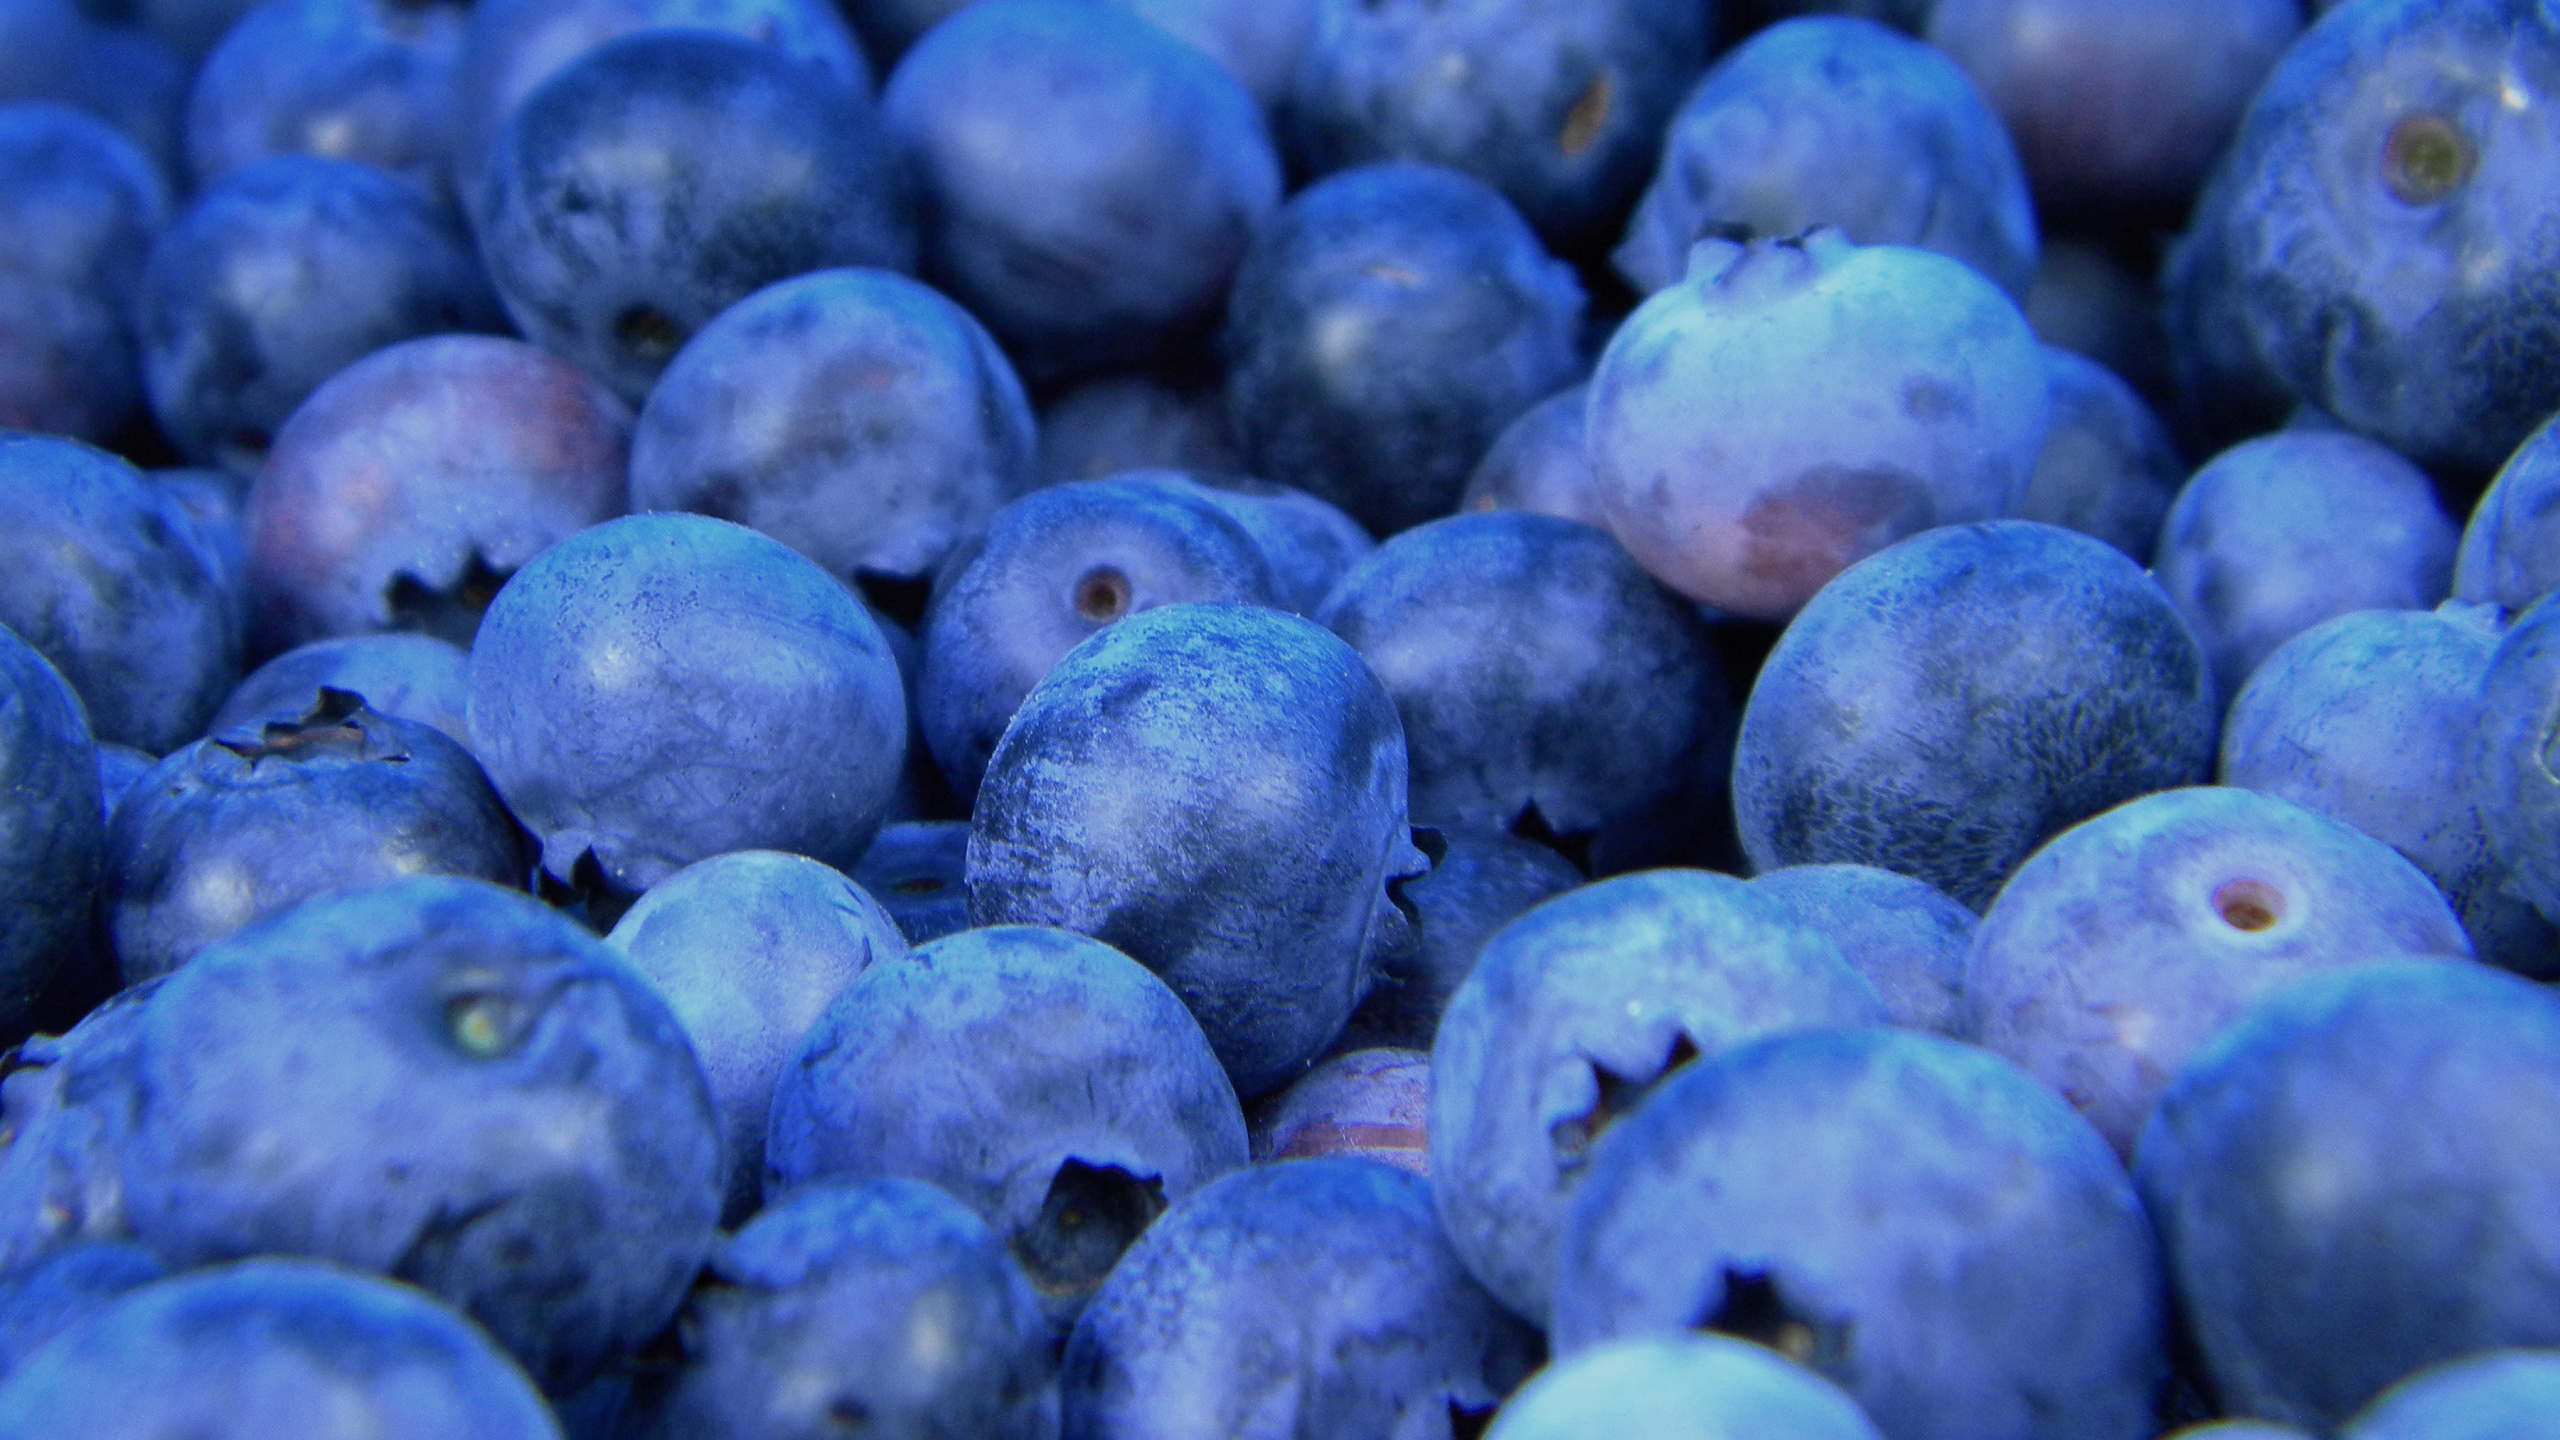 蓝莓, 无核果, 食品, 工厂, 味道 壁纸 2560x1440 允许